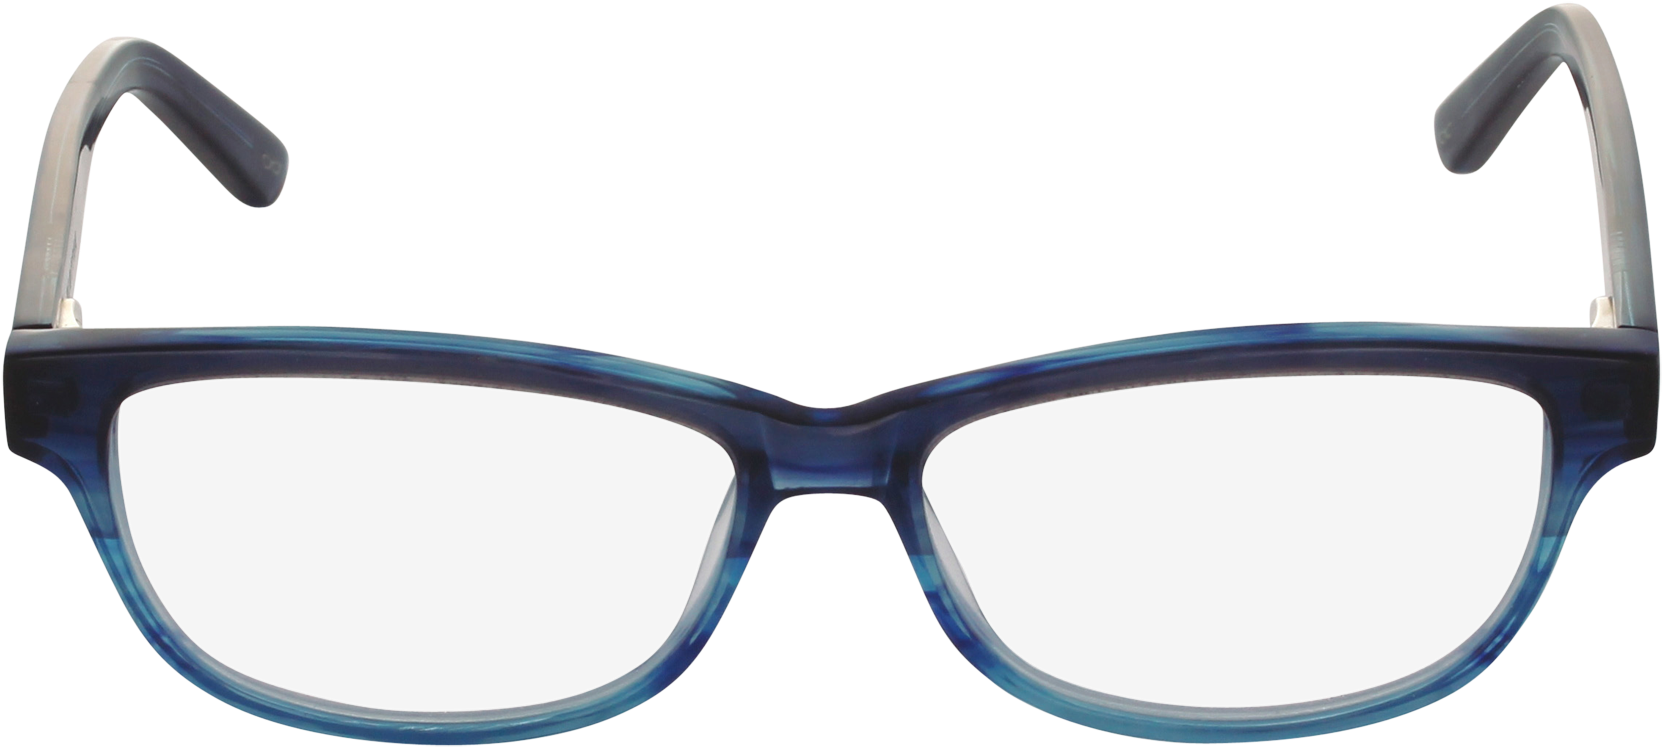 Sunglasses Png Transparent - Police Close Up2 V1919 0g32 (2000x1120)